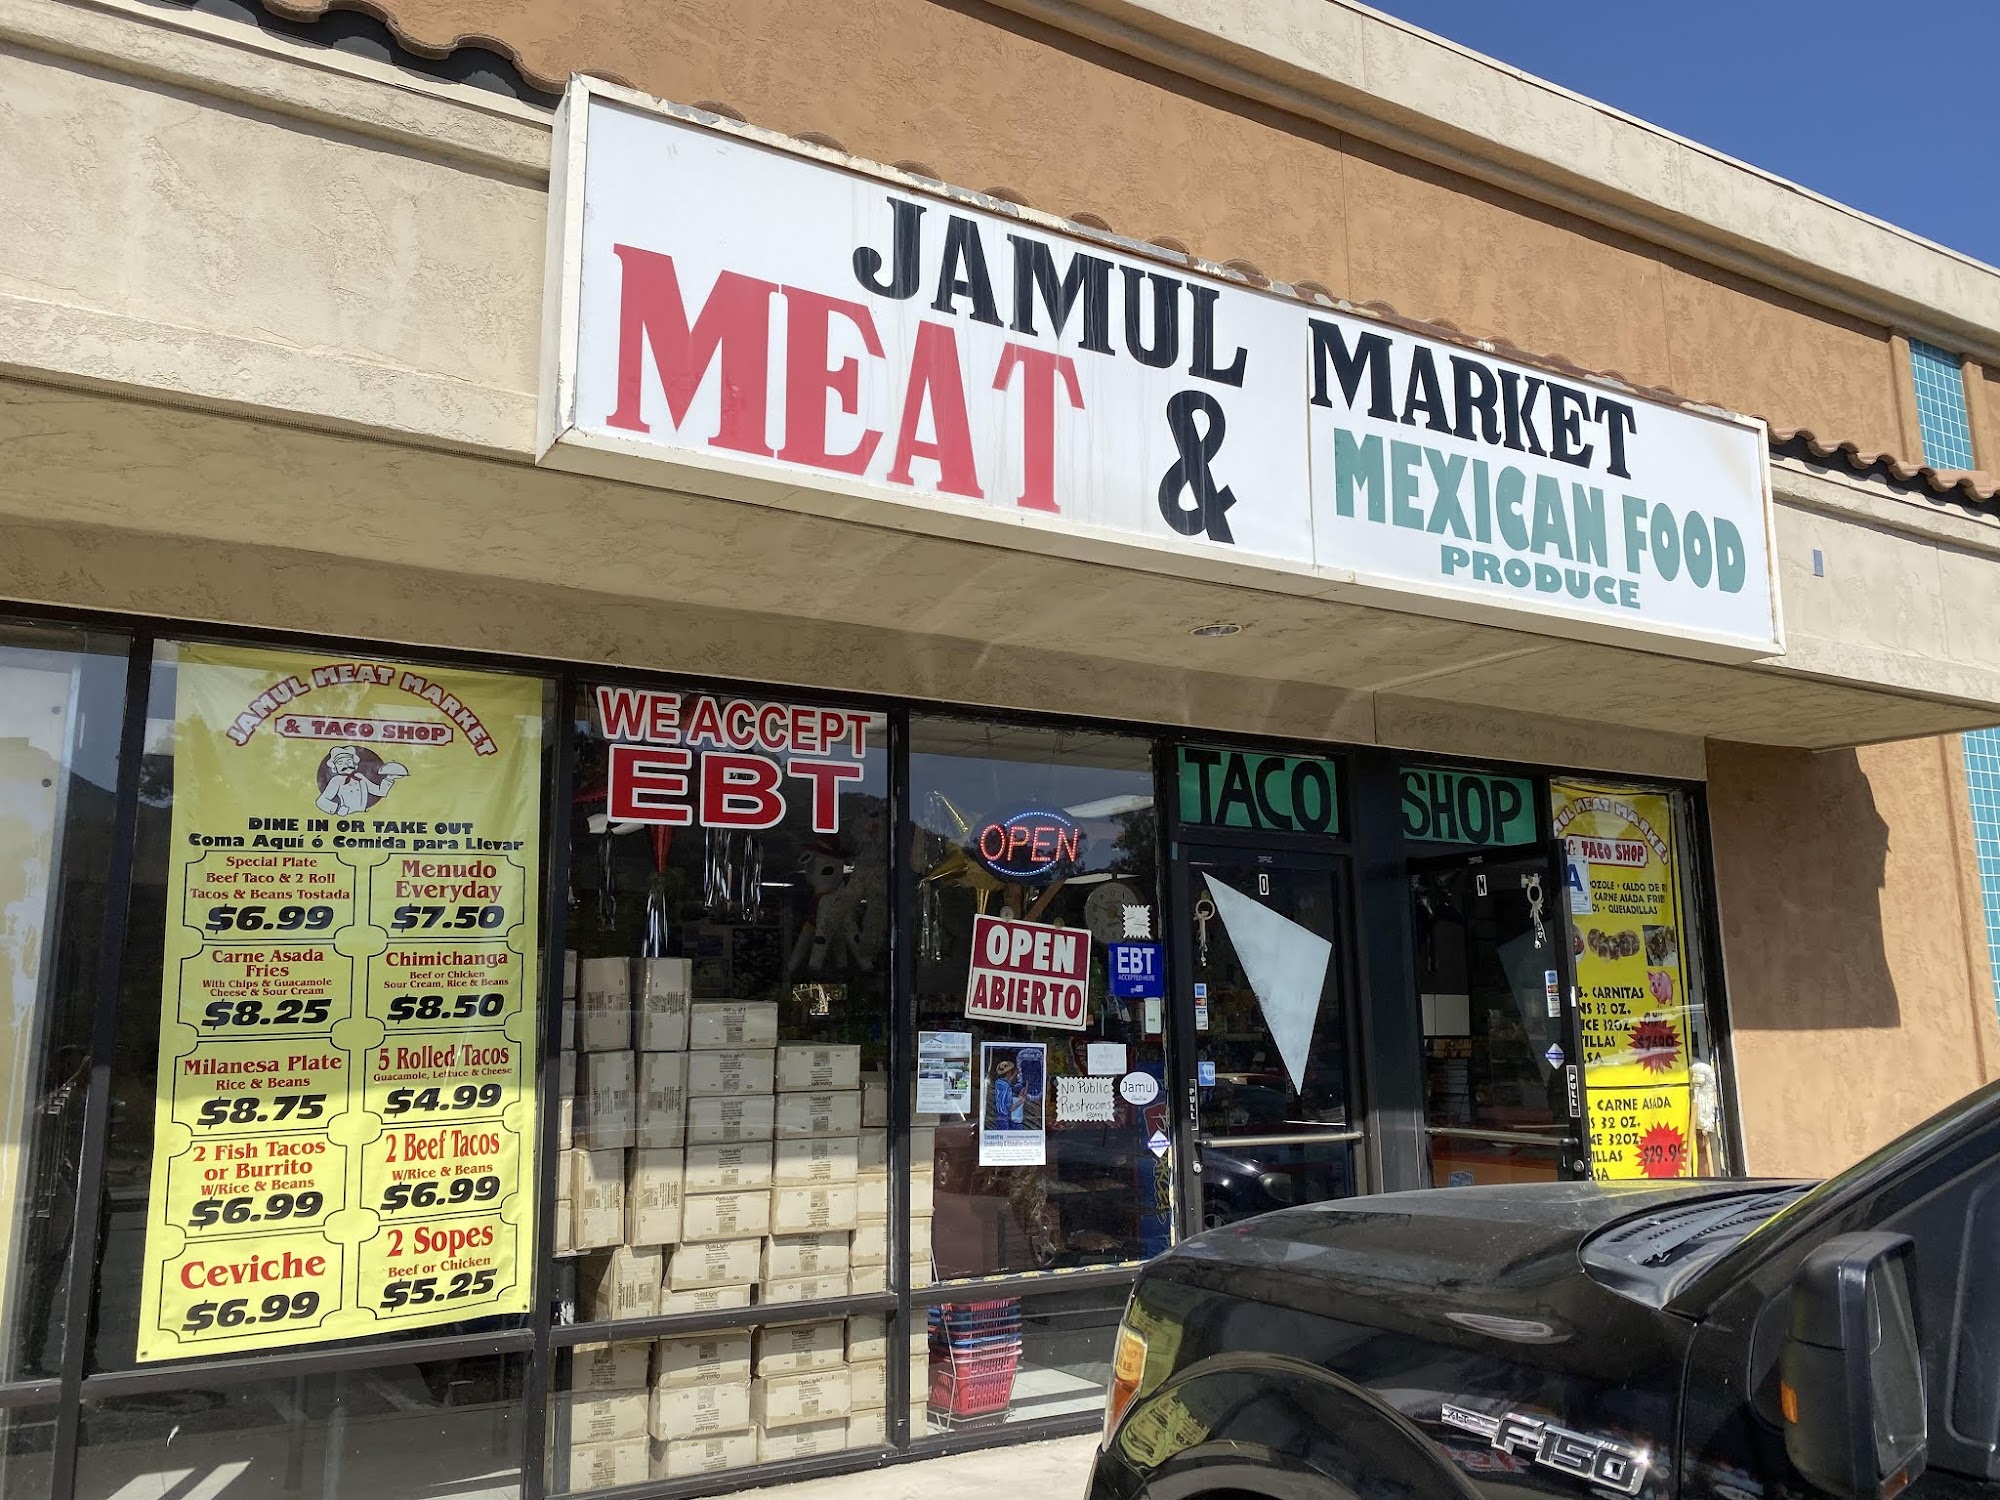 Jamul Meat Market